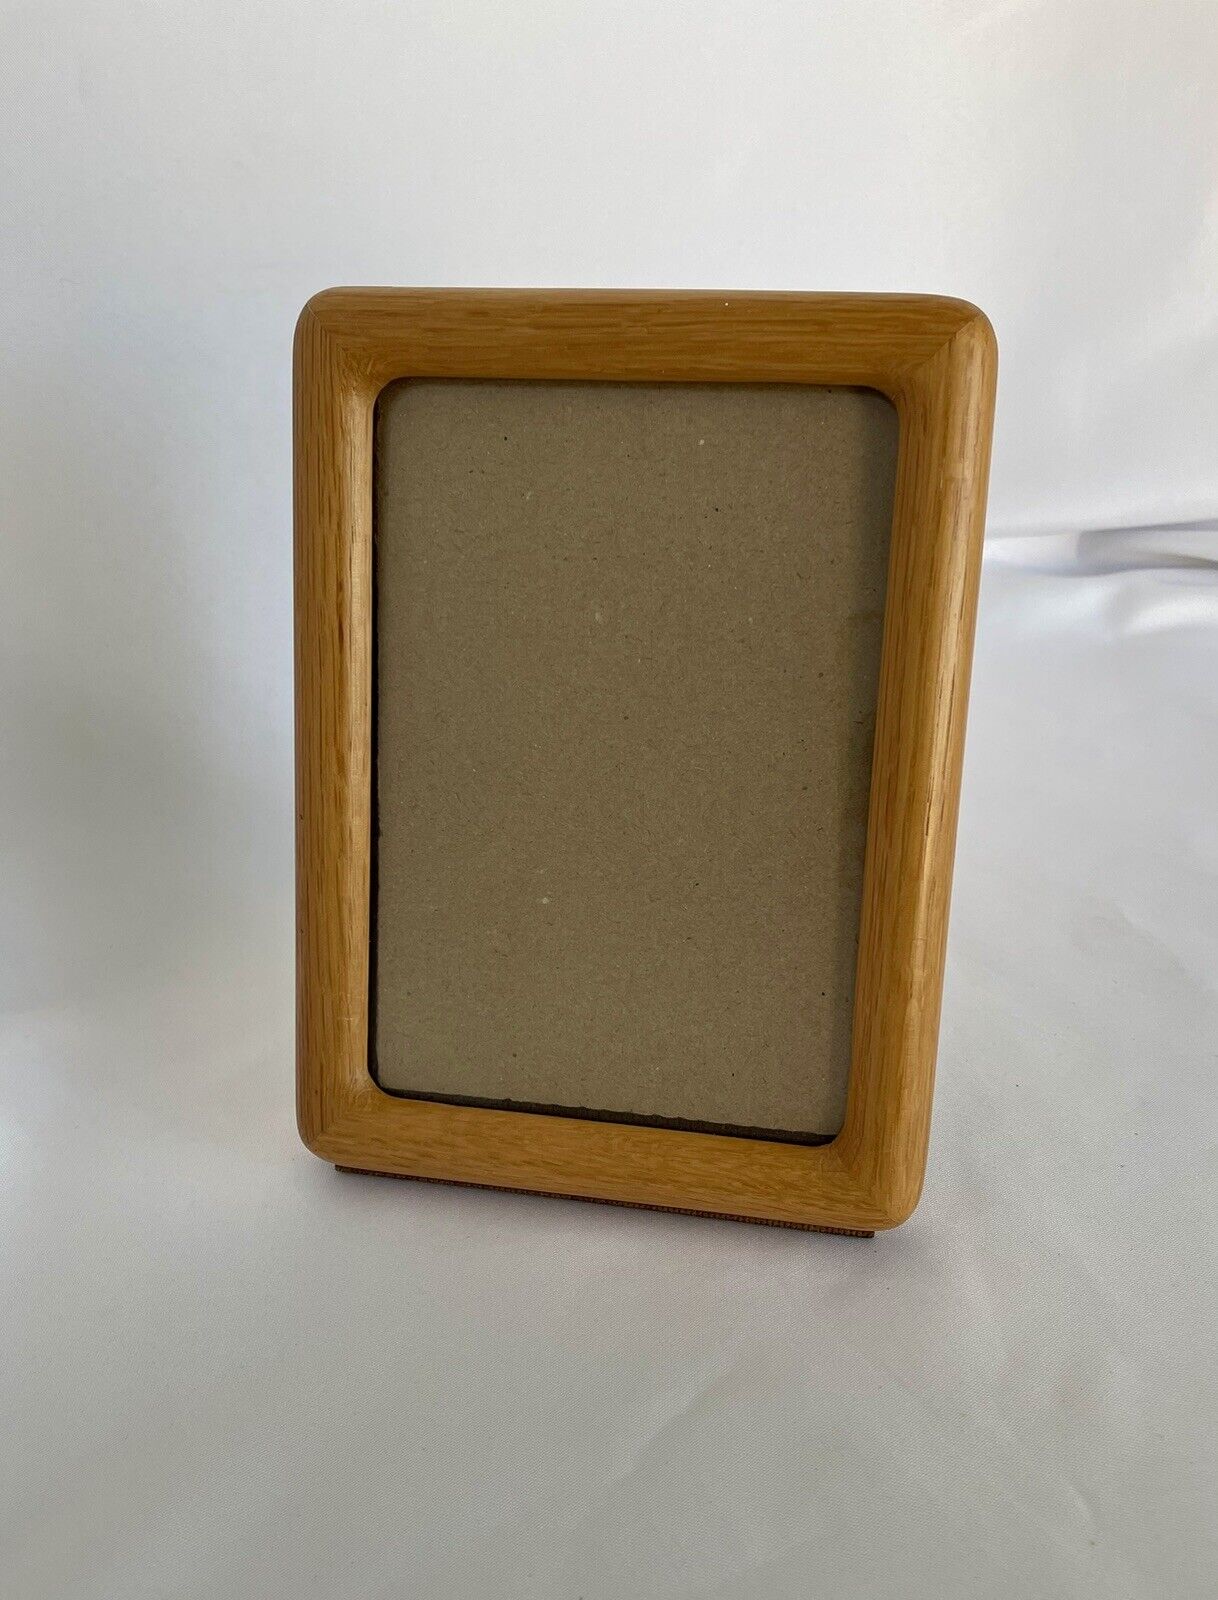 VTG Teak Light Wood Picture Photo Frame 8x6 Glass Insert Shelf Decor